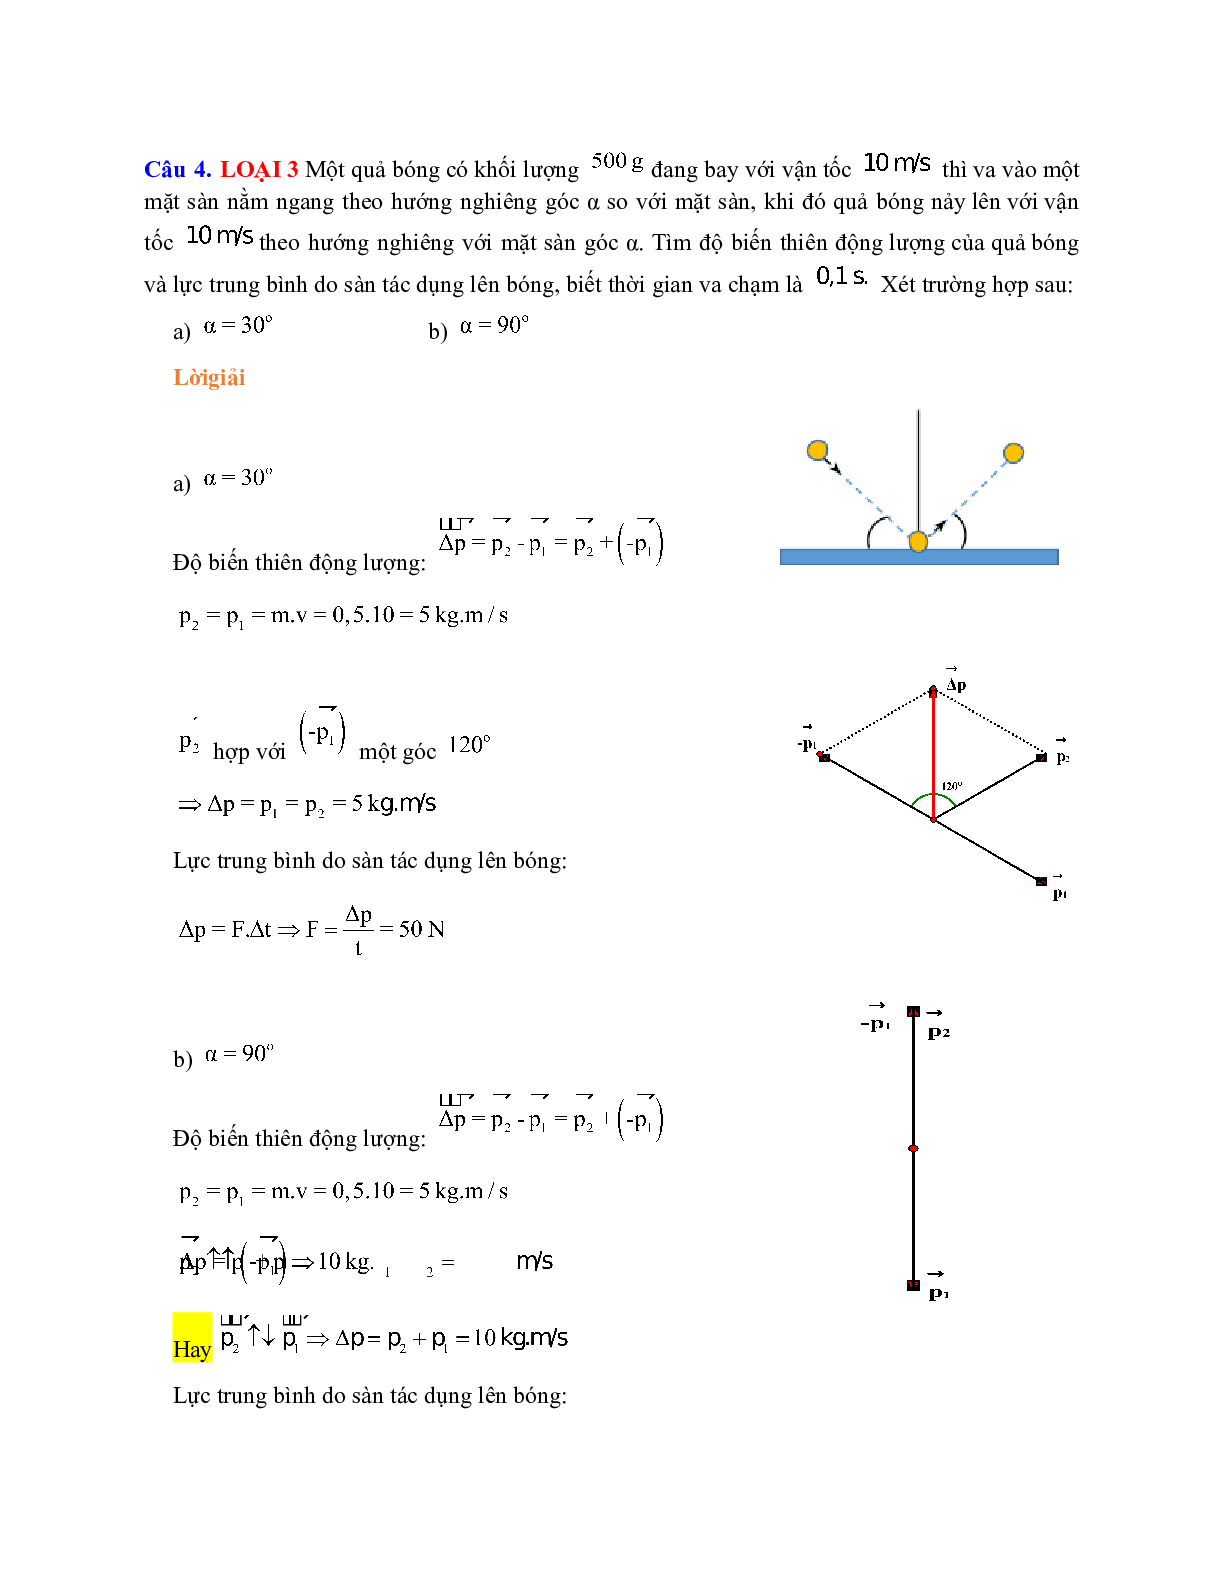 Chuyên đề: Các định luật bảo toàn môn Vật lý lớp 10 (trang 4)